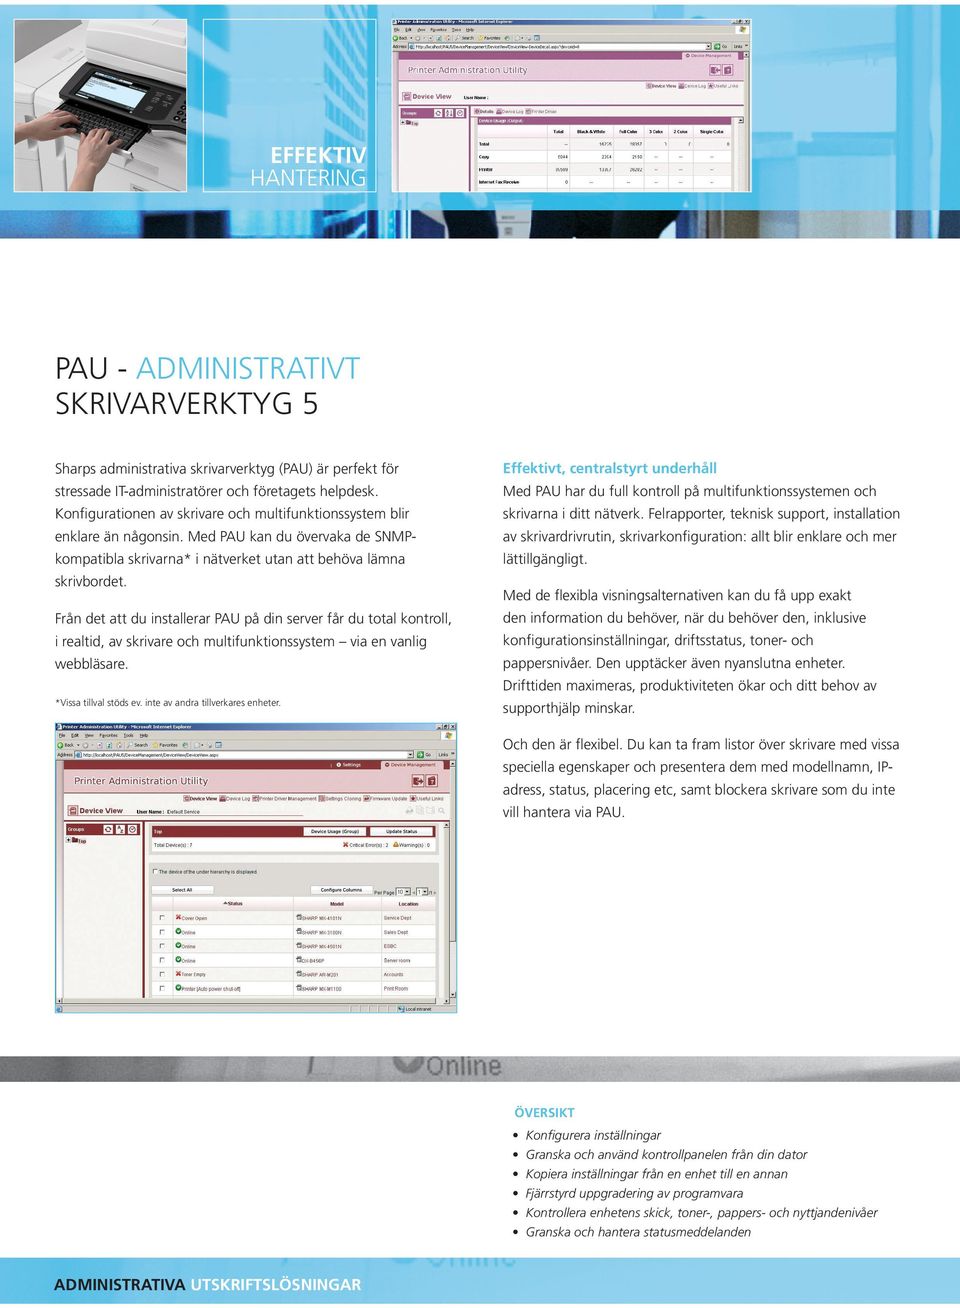 Från det att du installerar PAU på din server får du total kontroll, i realtid, av skrivare och multifunktionssystem via en vanlig webbläsare. *Vissa tillval stöds ev.